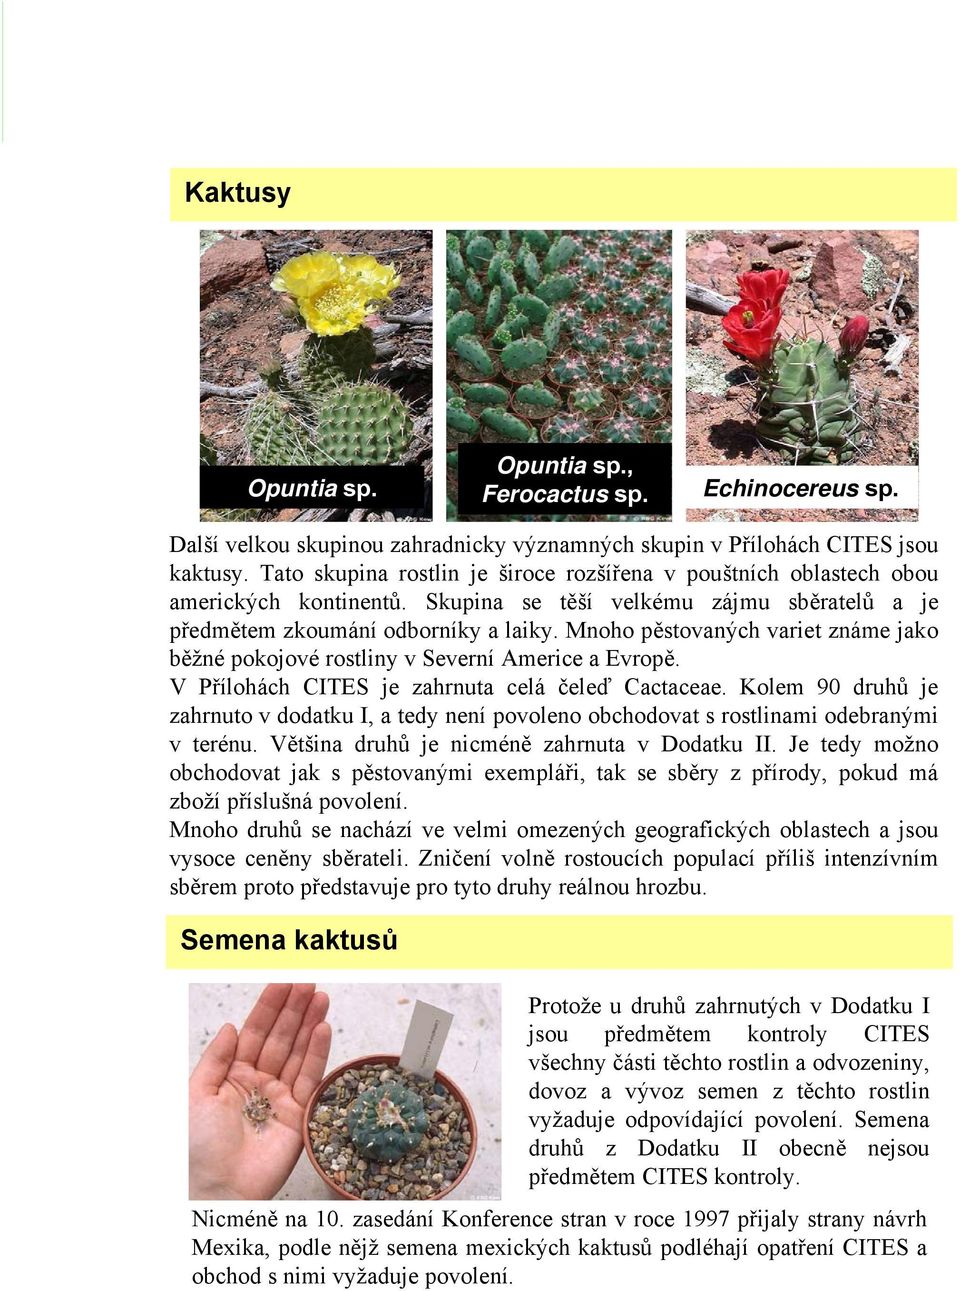 Mnoho pěstovaných variet známe jako běžné pokojové rostliny v Severní Americe a Evropě. V Přílohách CITES je zahrnuta celá čeleď Cactaceae.